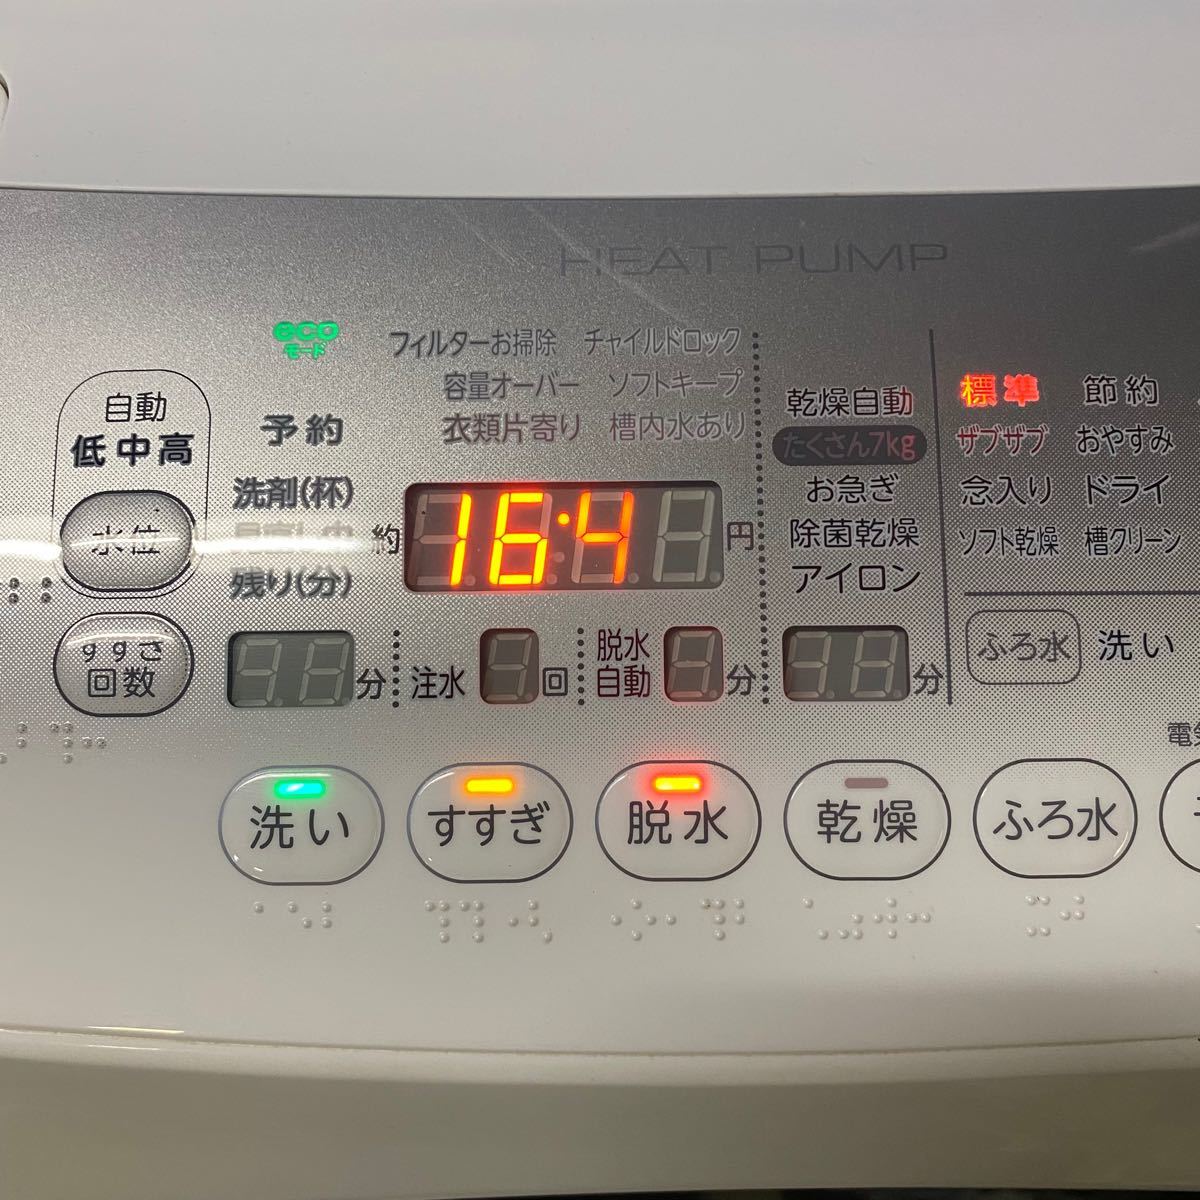 福岡周辺限定 TOSHIBA 東芝 ドラム式洗濯機 2013年製 9kg｜Yahoo